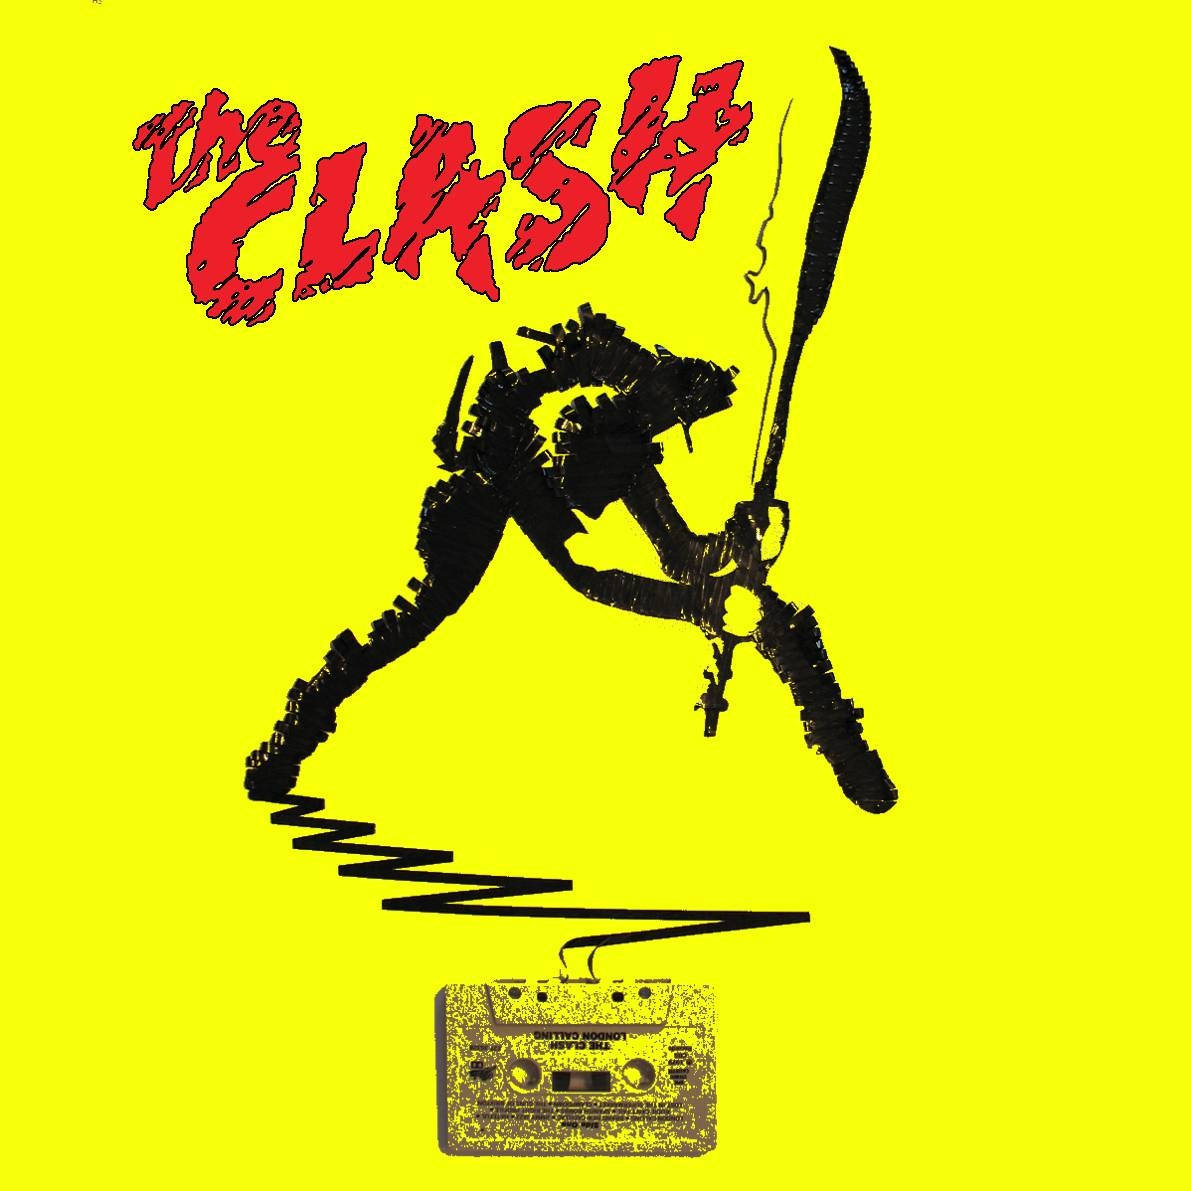 The Clash London Calling Album Cover Art